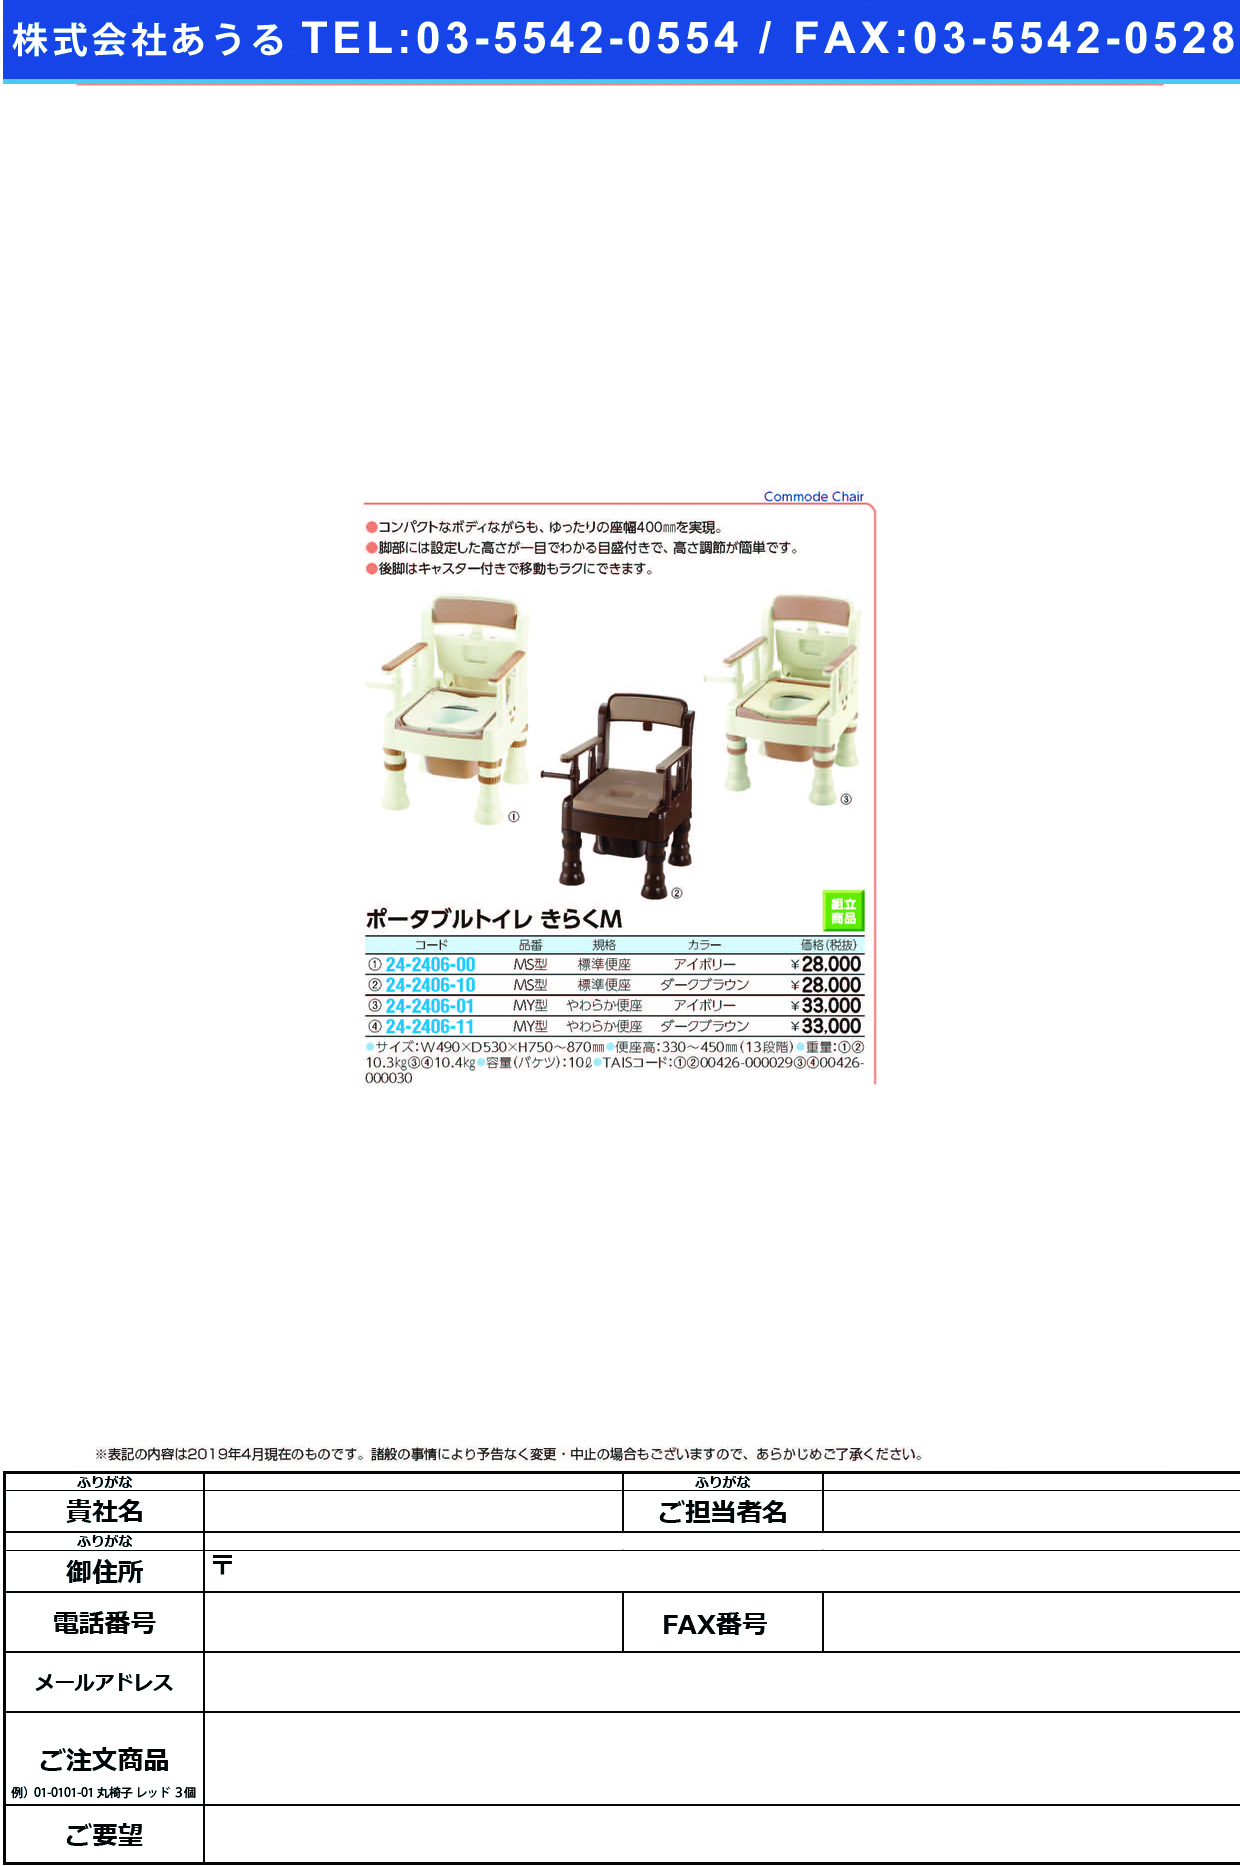 (24-2406-11)ポータブルトイレきらくＭＹ型 45613(ﾔﾜﾗｶ)ﾀﾞｰｸﾌﾞﾗｳﾝ ﾎﾟｰﾀﾌﾞﾙﾄｲﾚｷﾗｸMYｶﾞﾀ(リッチェル)【1台単位】【2019年カタログ商品】